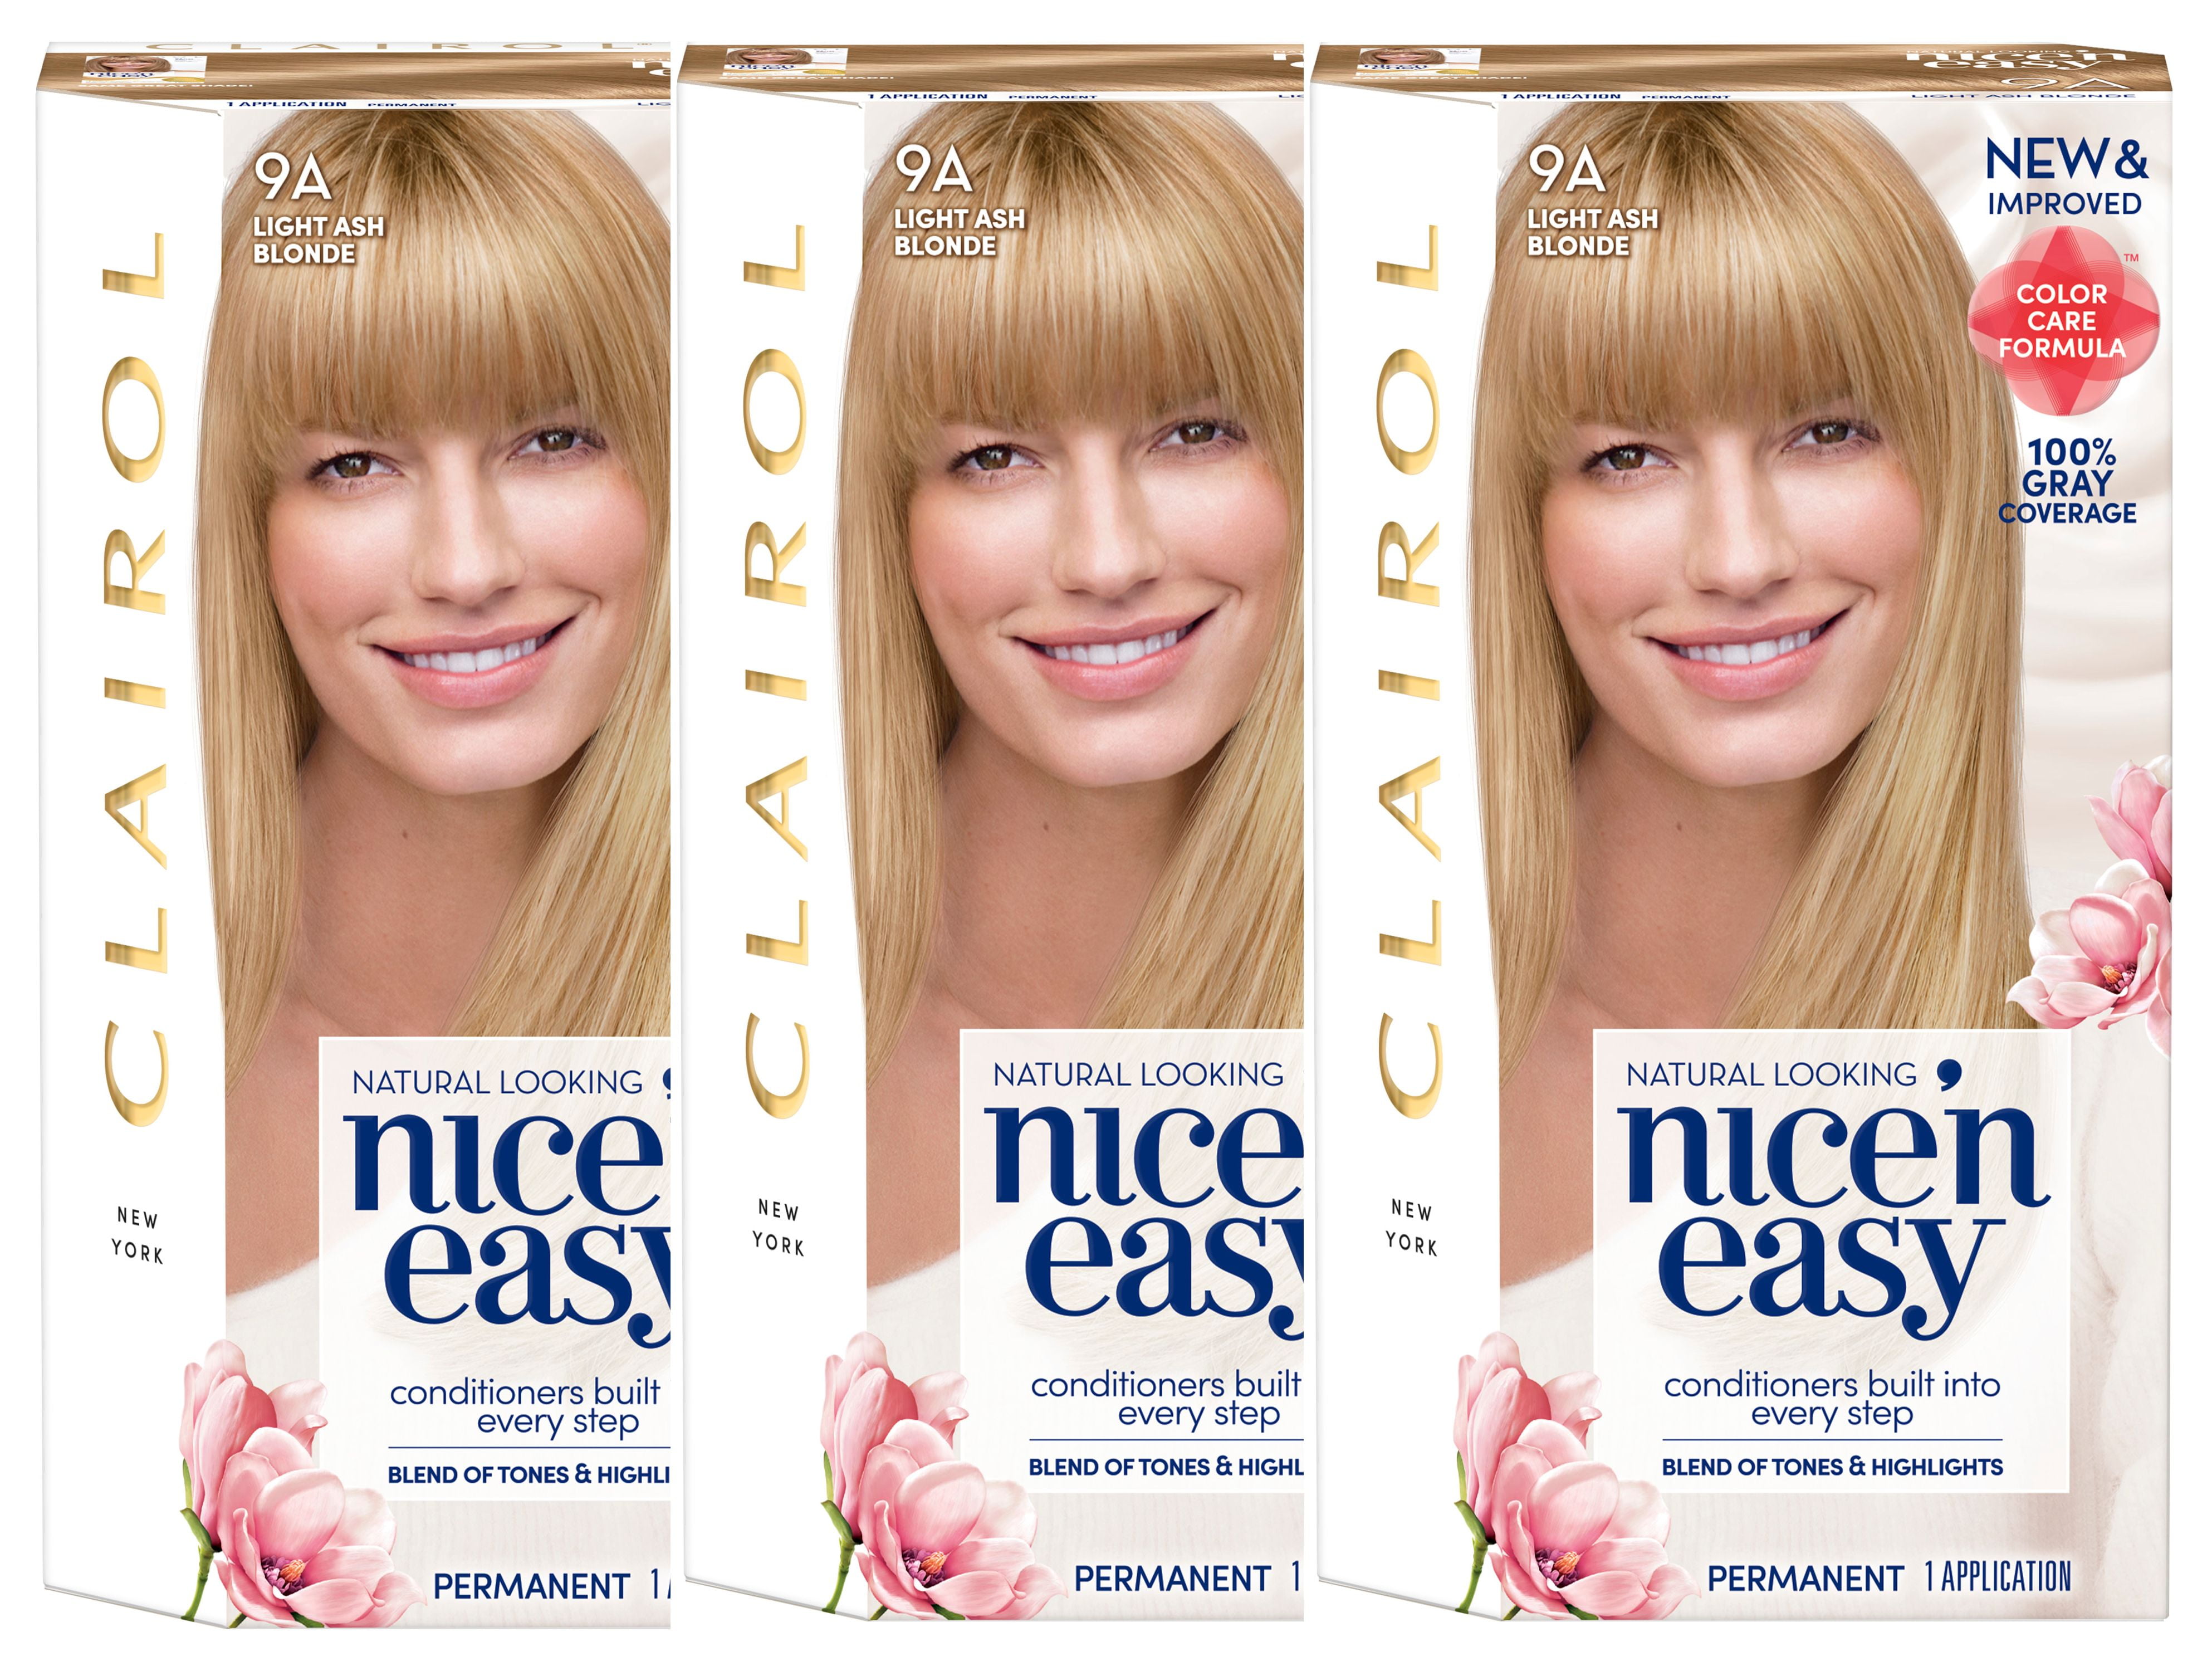 3. Clairol Nice'n Easy Permanent Hair Color, 7 Dark Blonde - wide 9